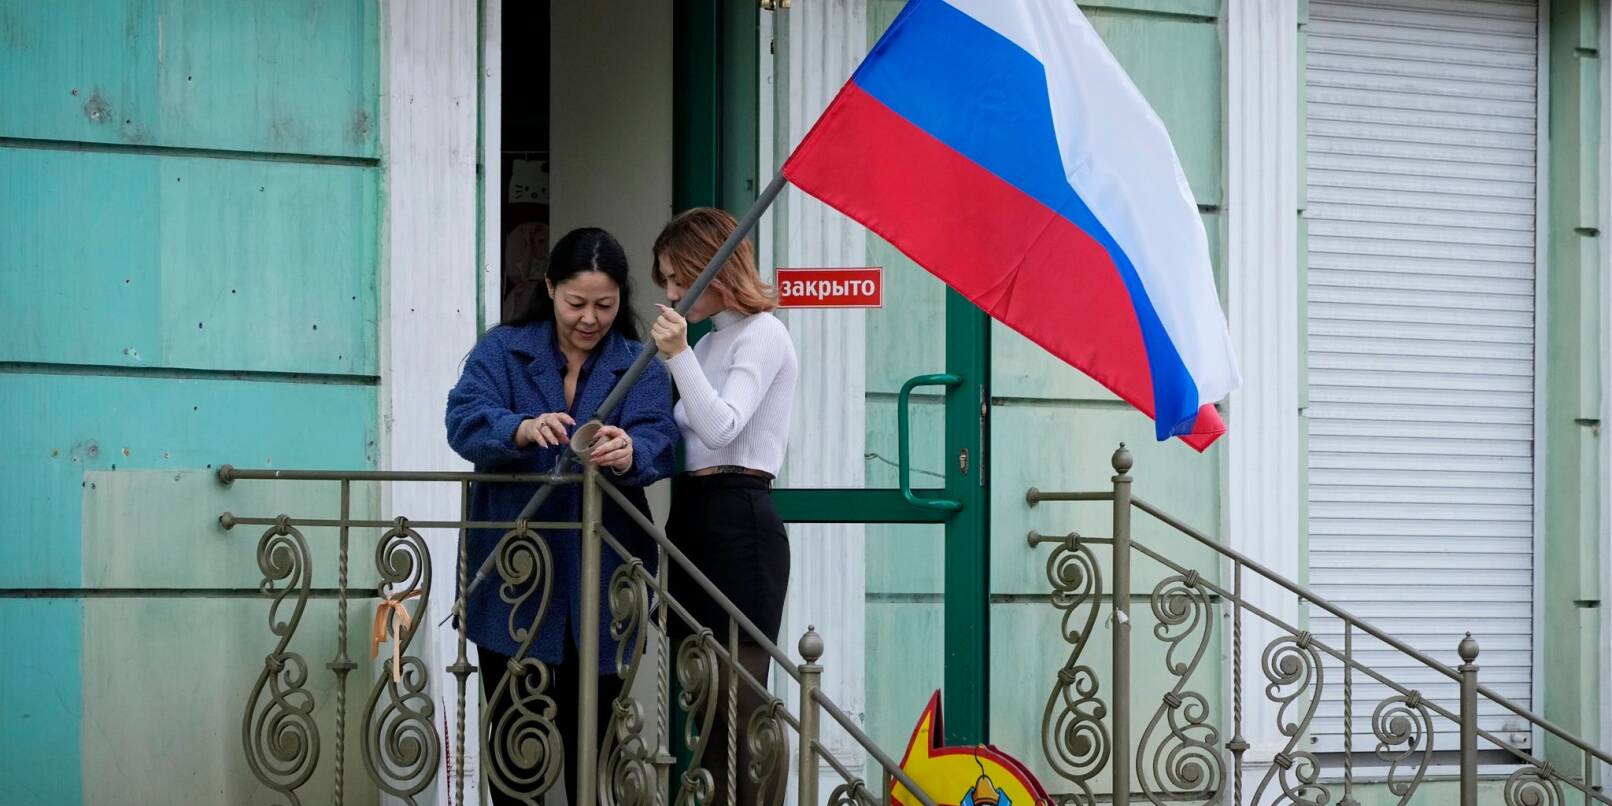 Frauen hängen im September 2022 eine russische Flagge in ihrem Geschäft in Luhansk auf.